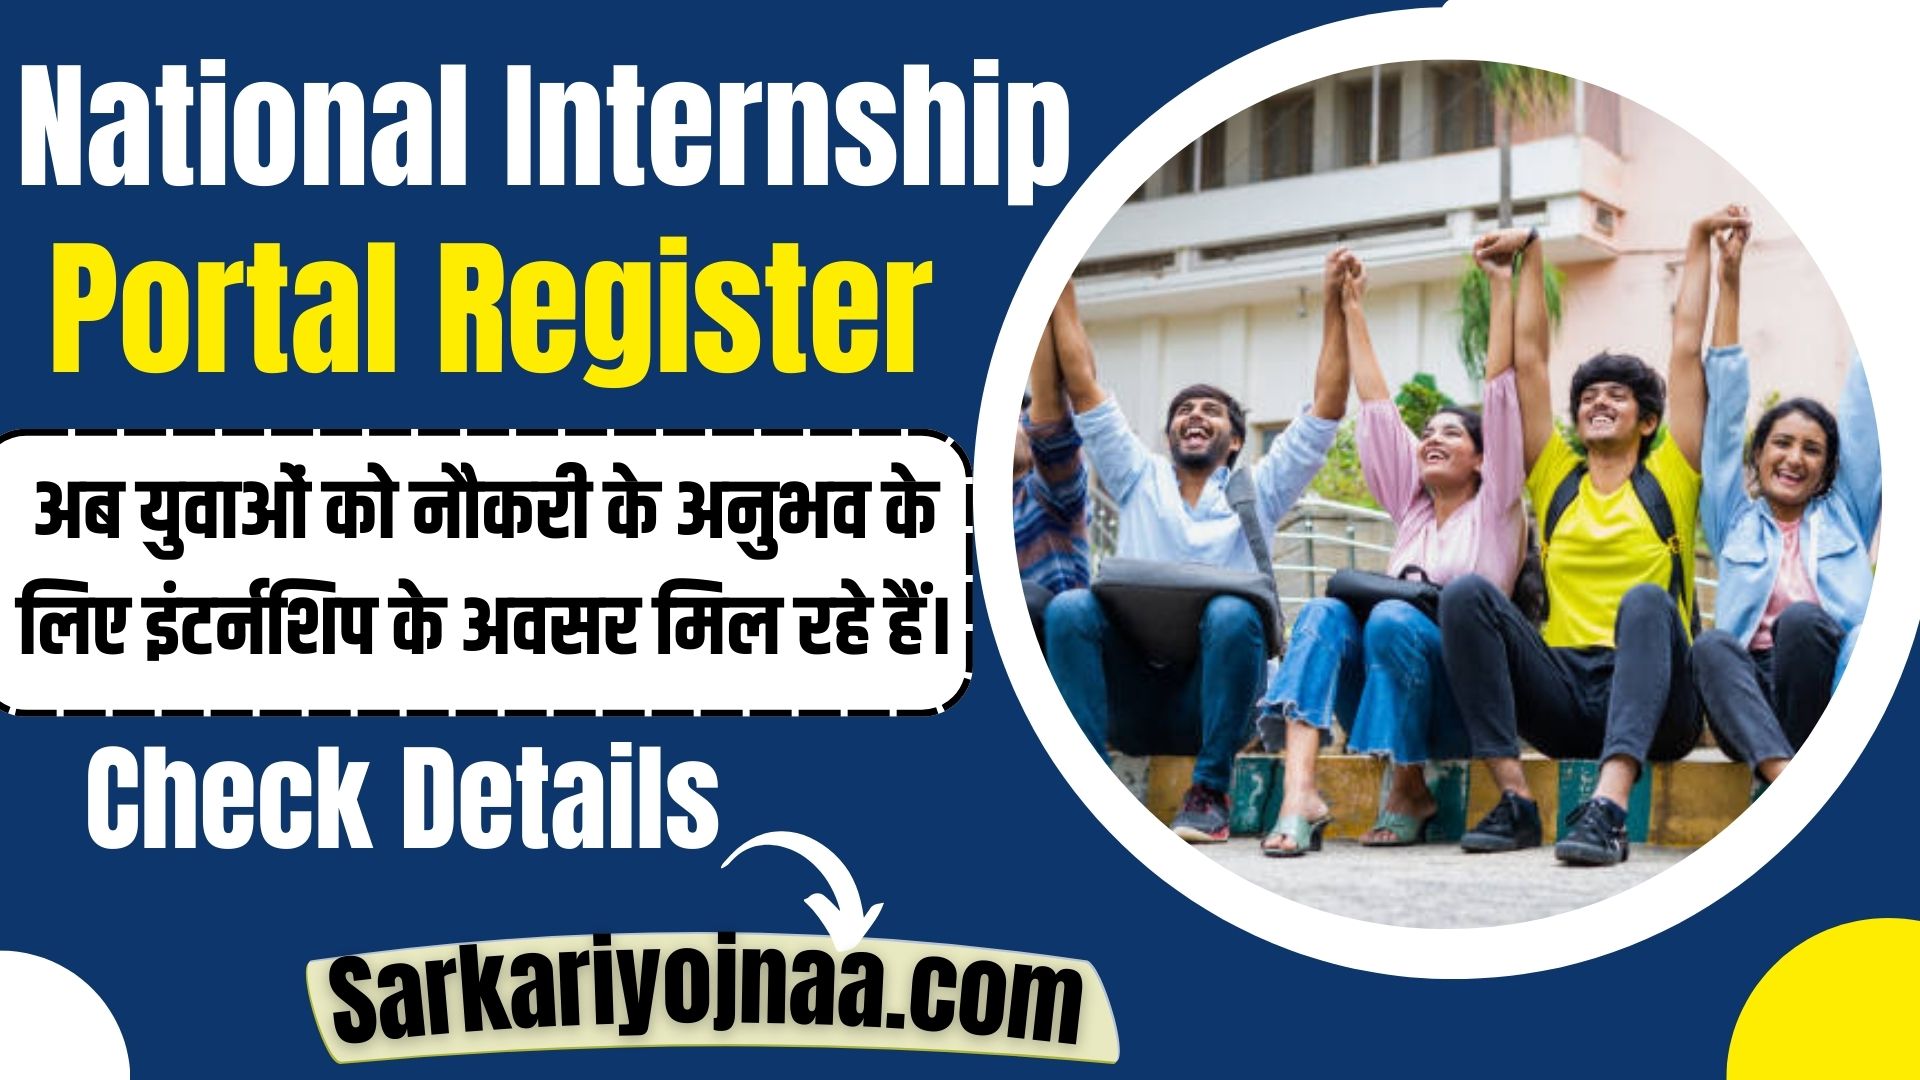 National Internship Portal Registration